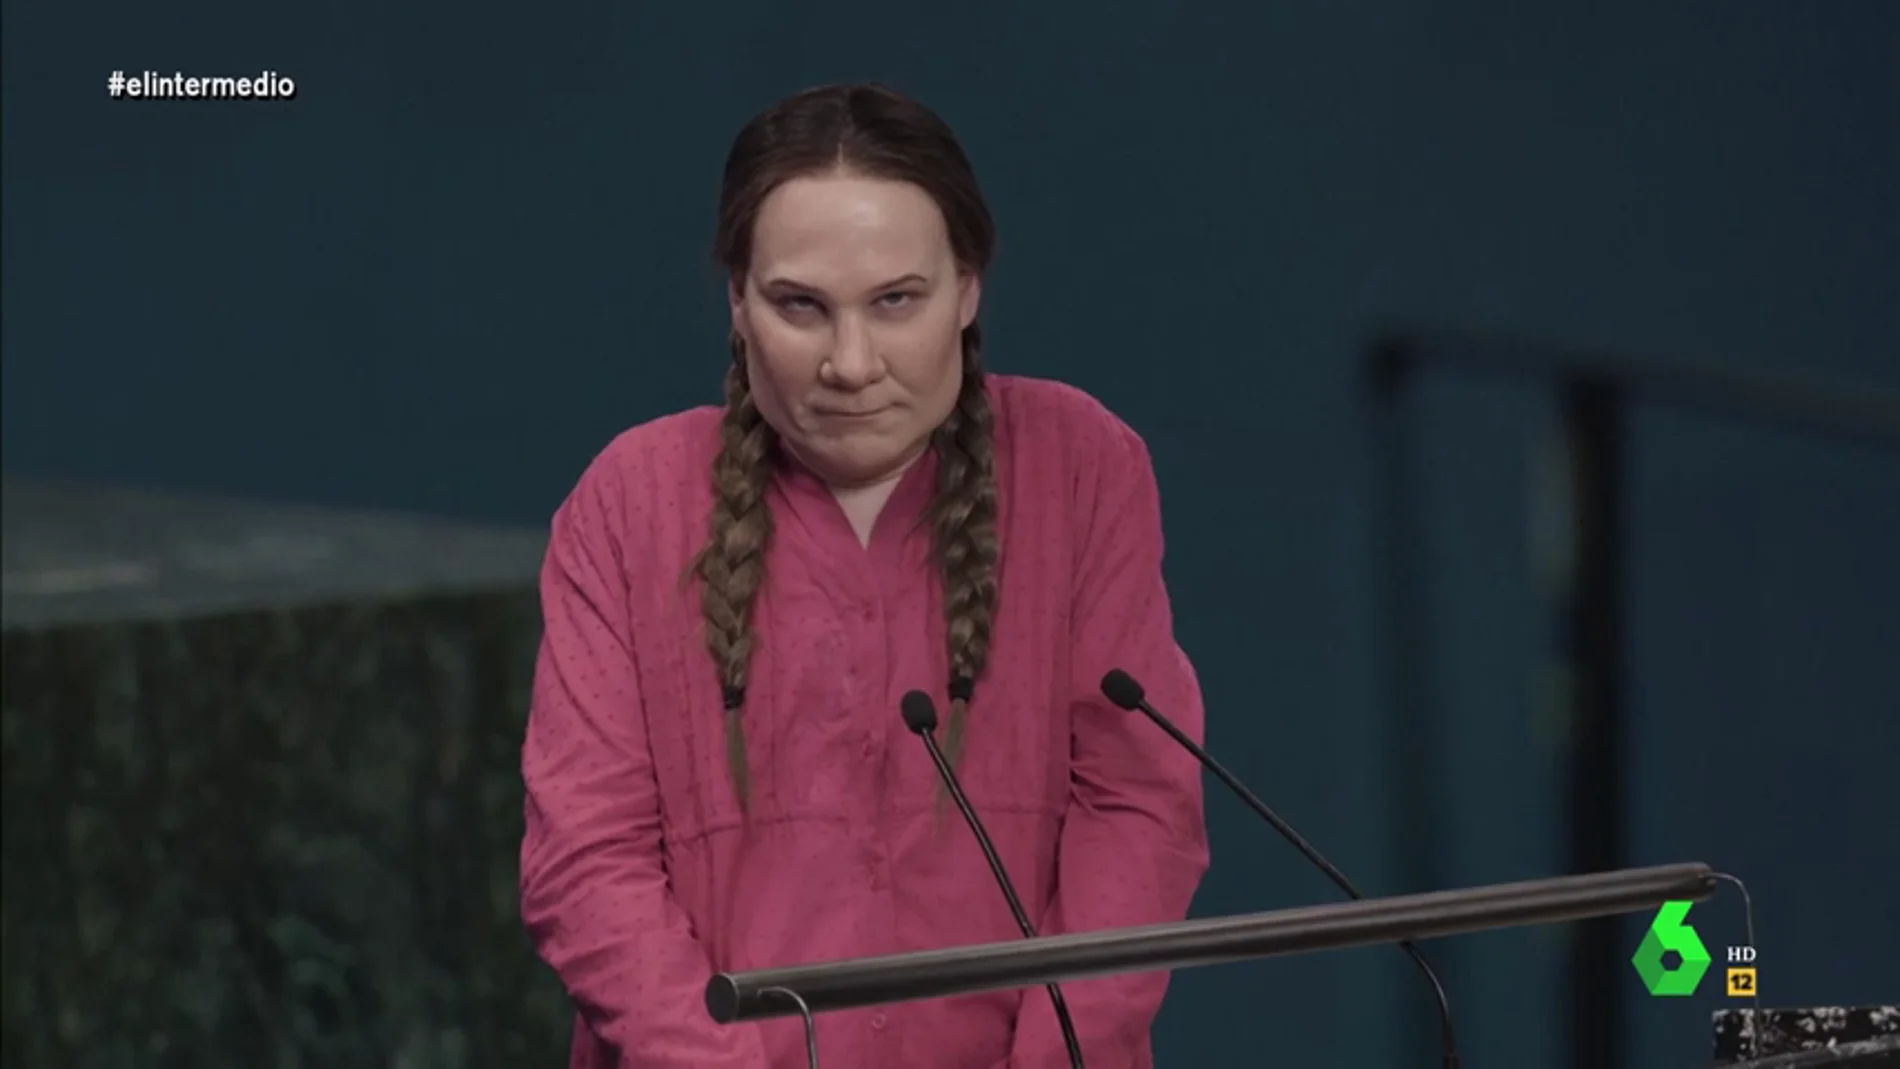 Joaquín Reyes recrea el discurso de Greta Thunberg ante los líderes de la ONU: "Vi a Trump y me dio unas ganas de cogerle del pescuezo..." 